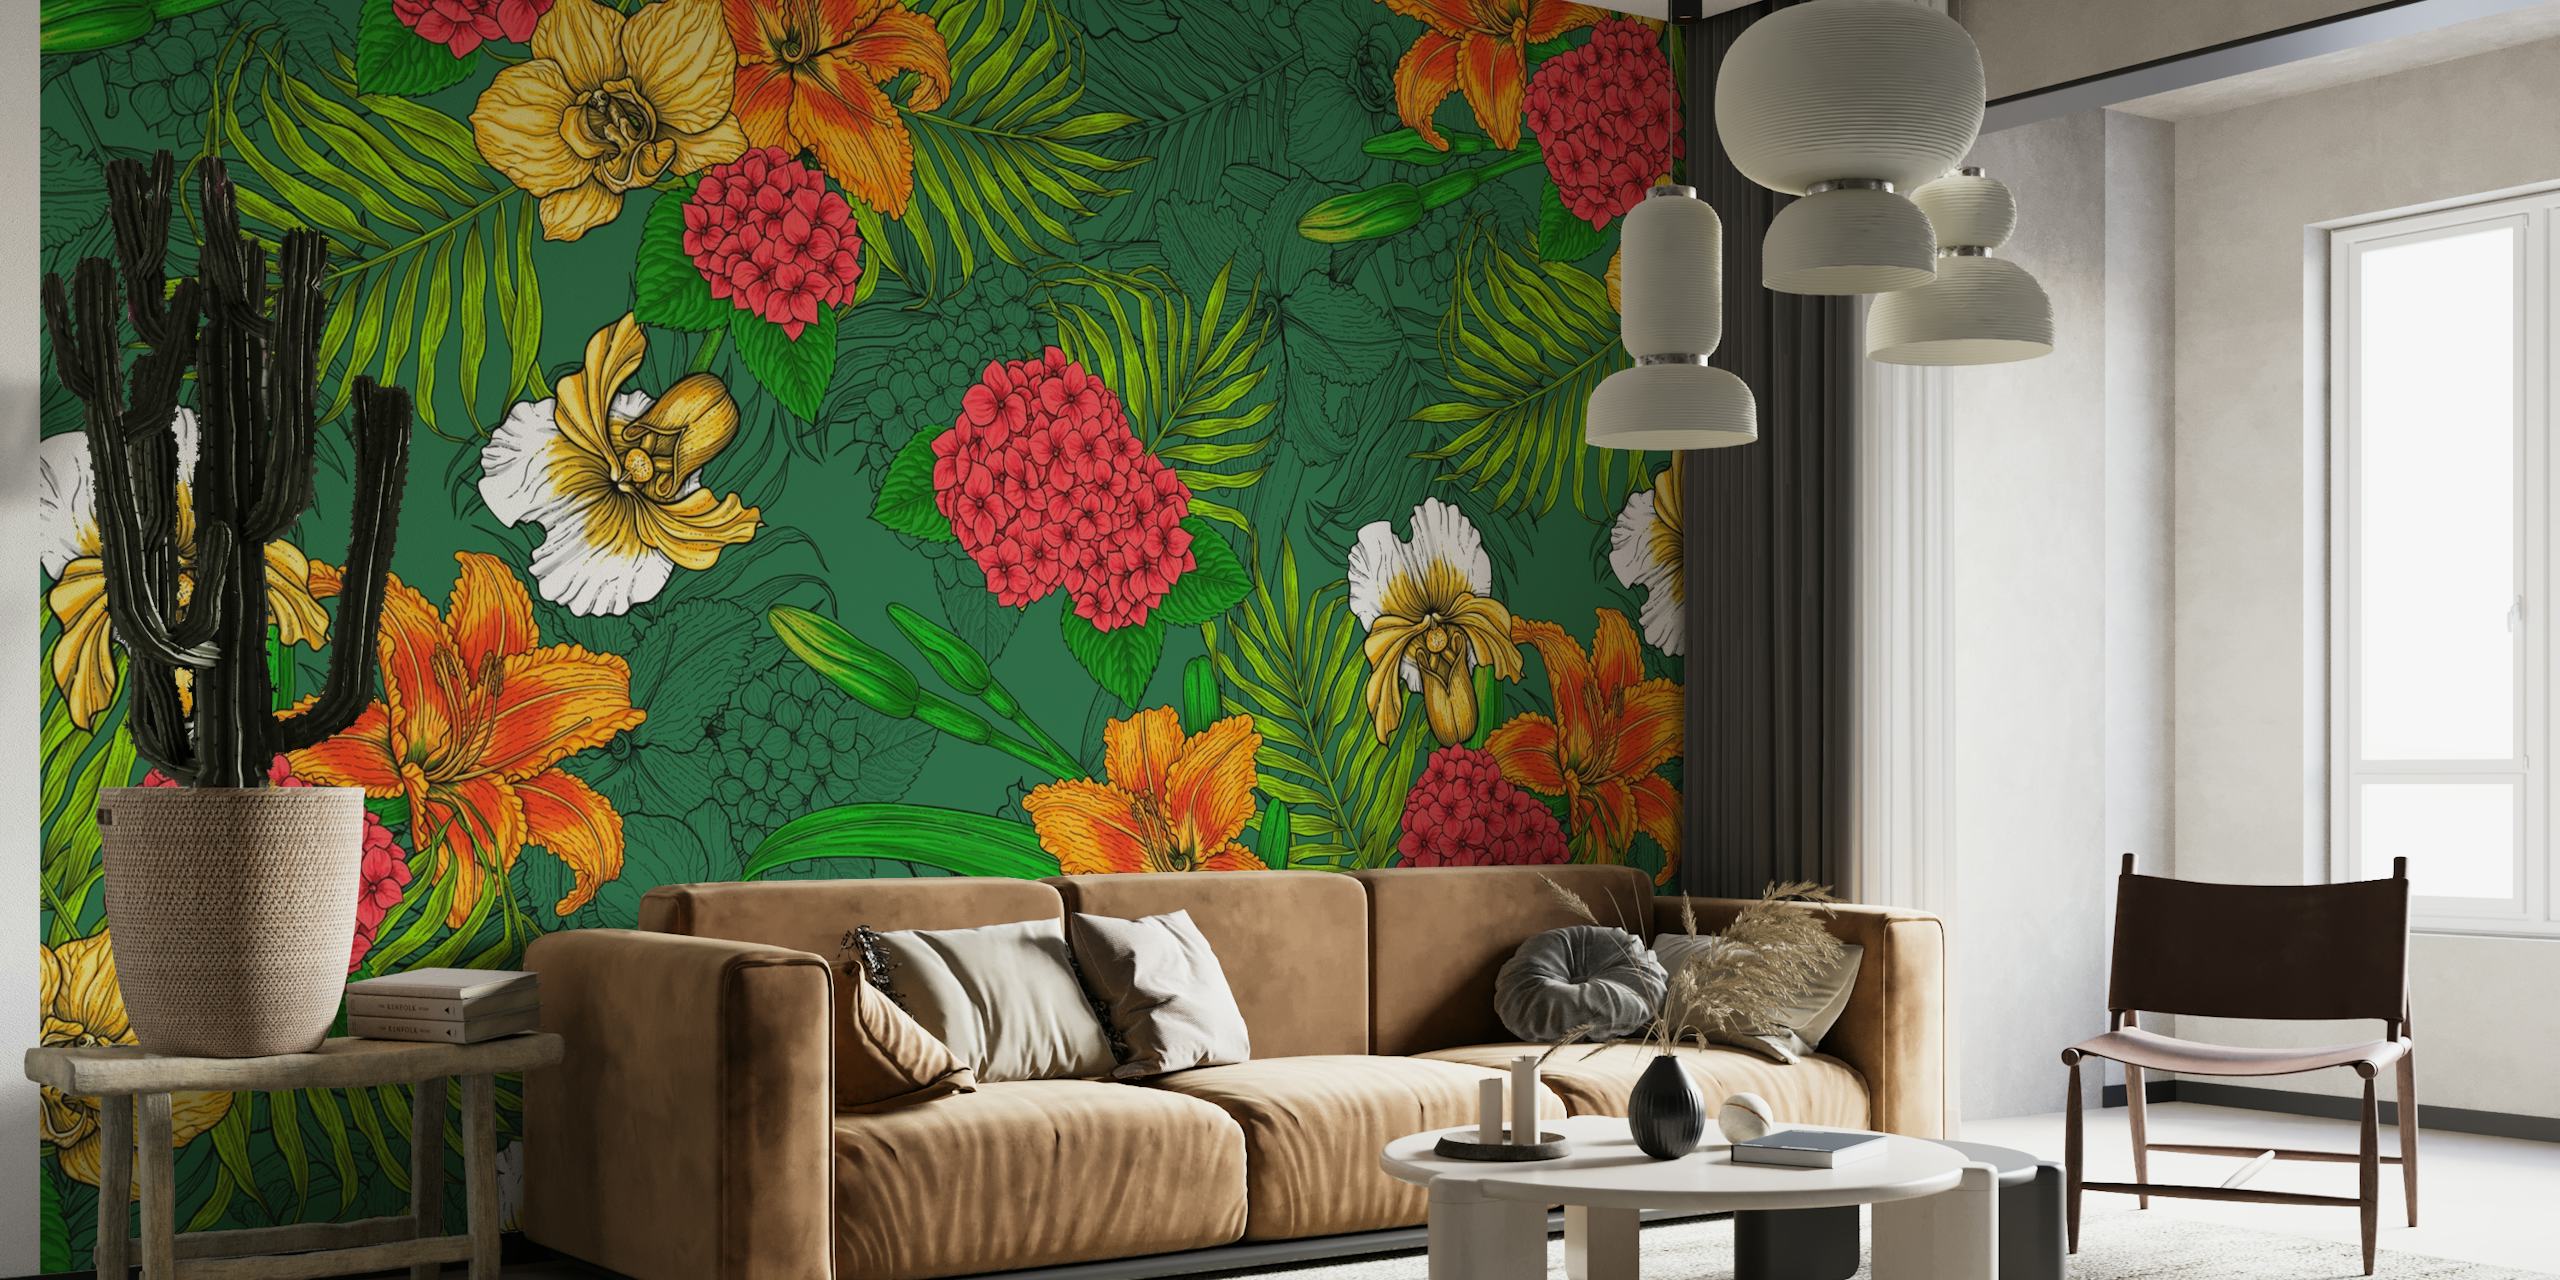 Živopisni zidni mural s tropskim cvjetnim uzorkom s narančastim i žutim cvjetovima i zelenim lišćem.